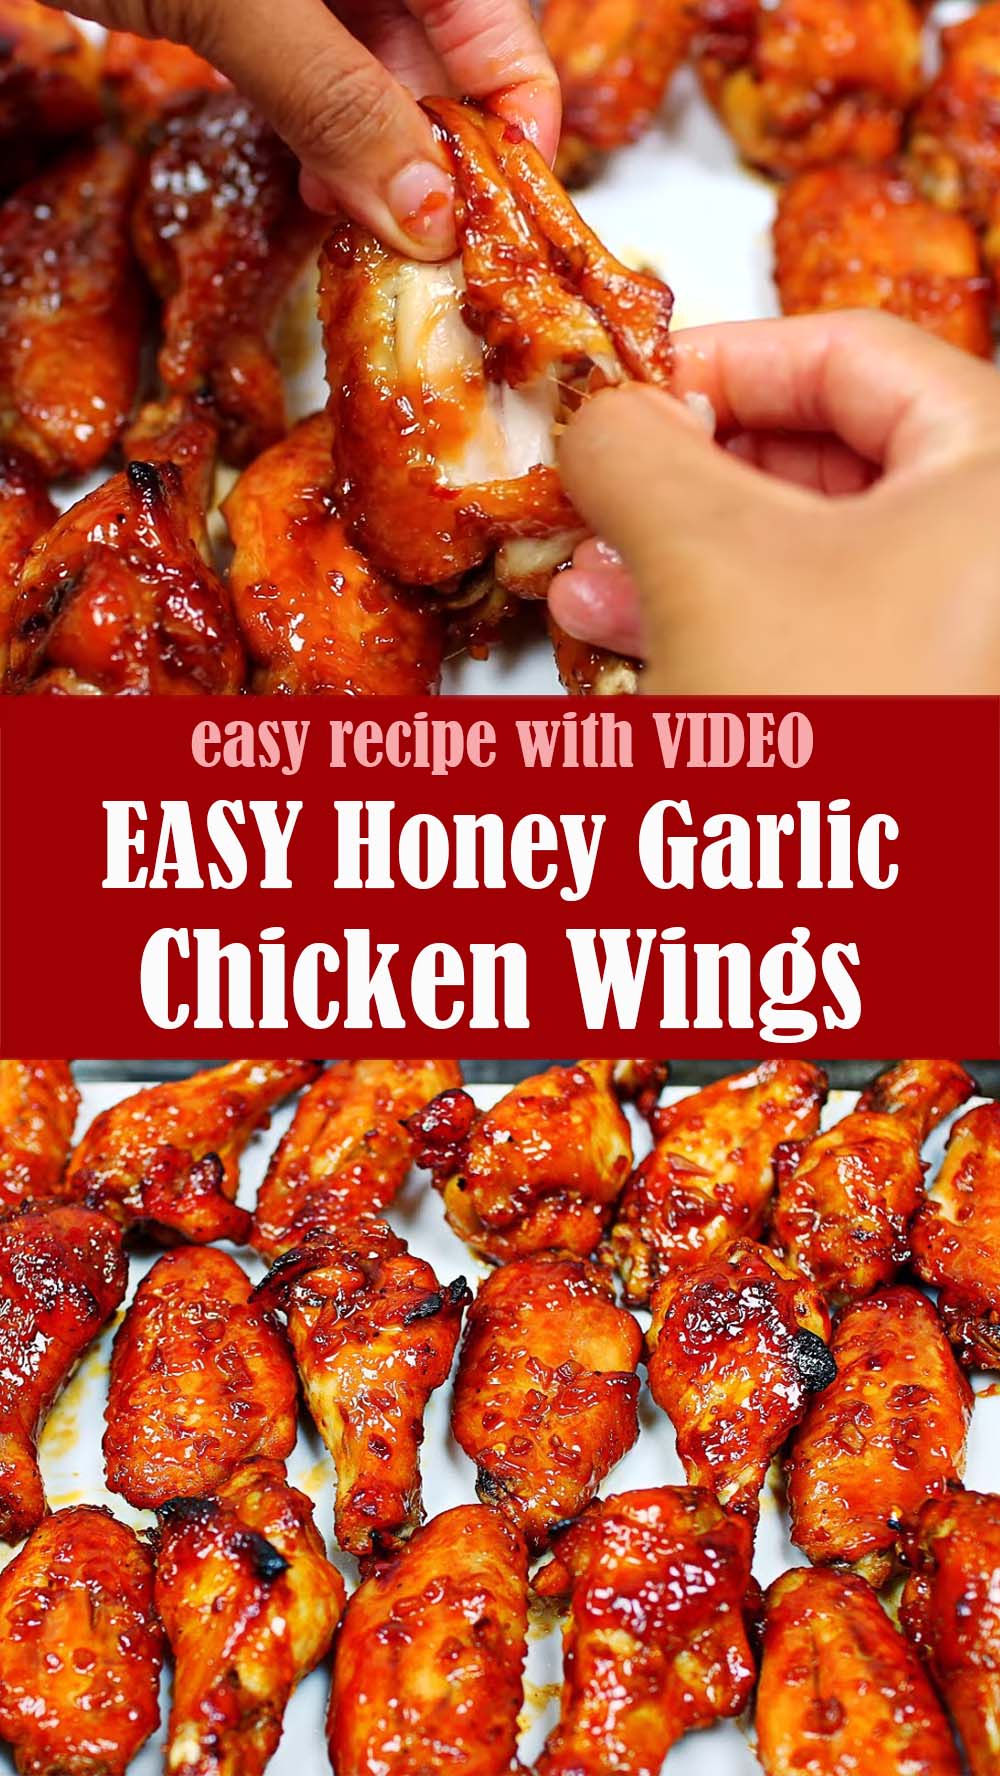 EASY Honey Garlic Chicken Wings